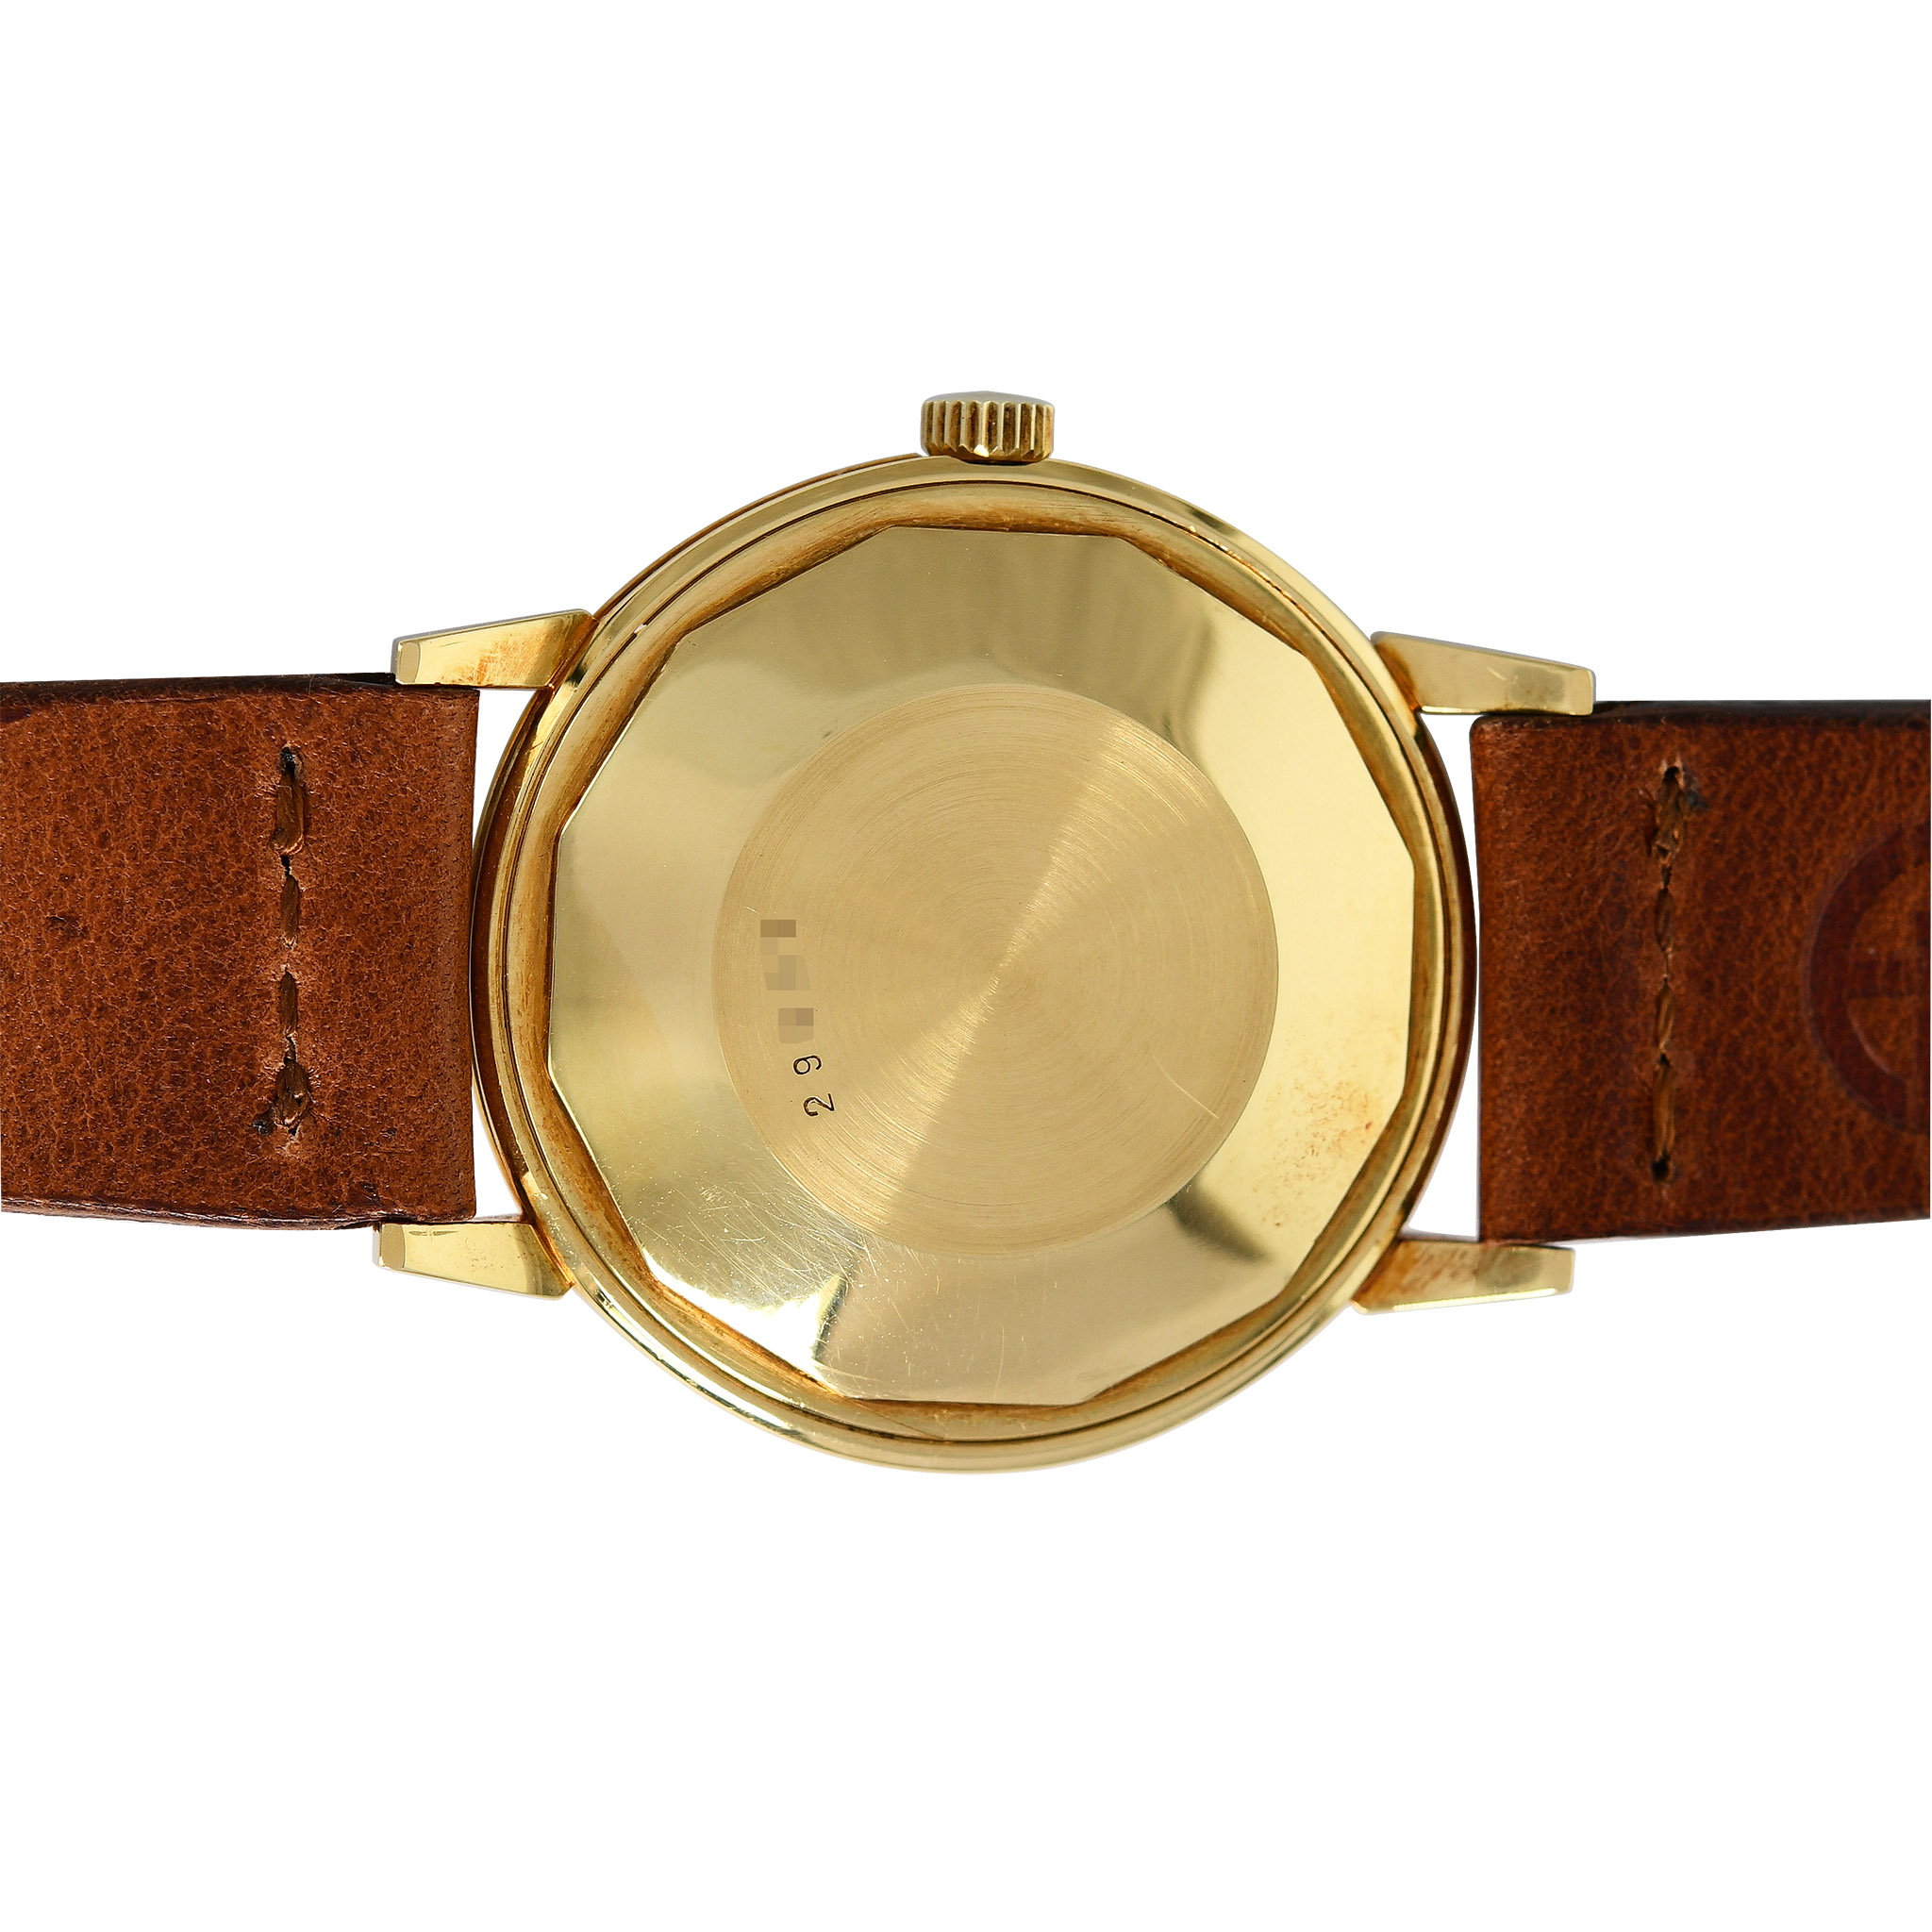 Audemars-Piguet-ref5209ba-automatic-dress-watch-img-main2